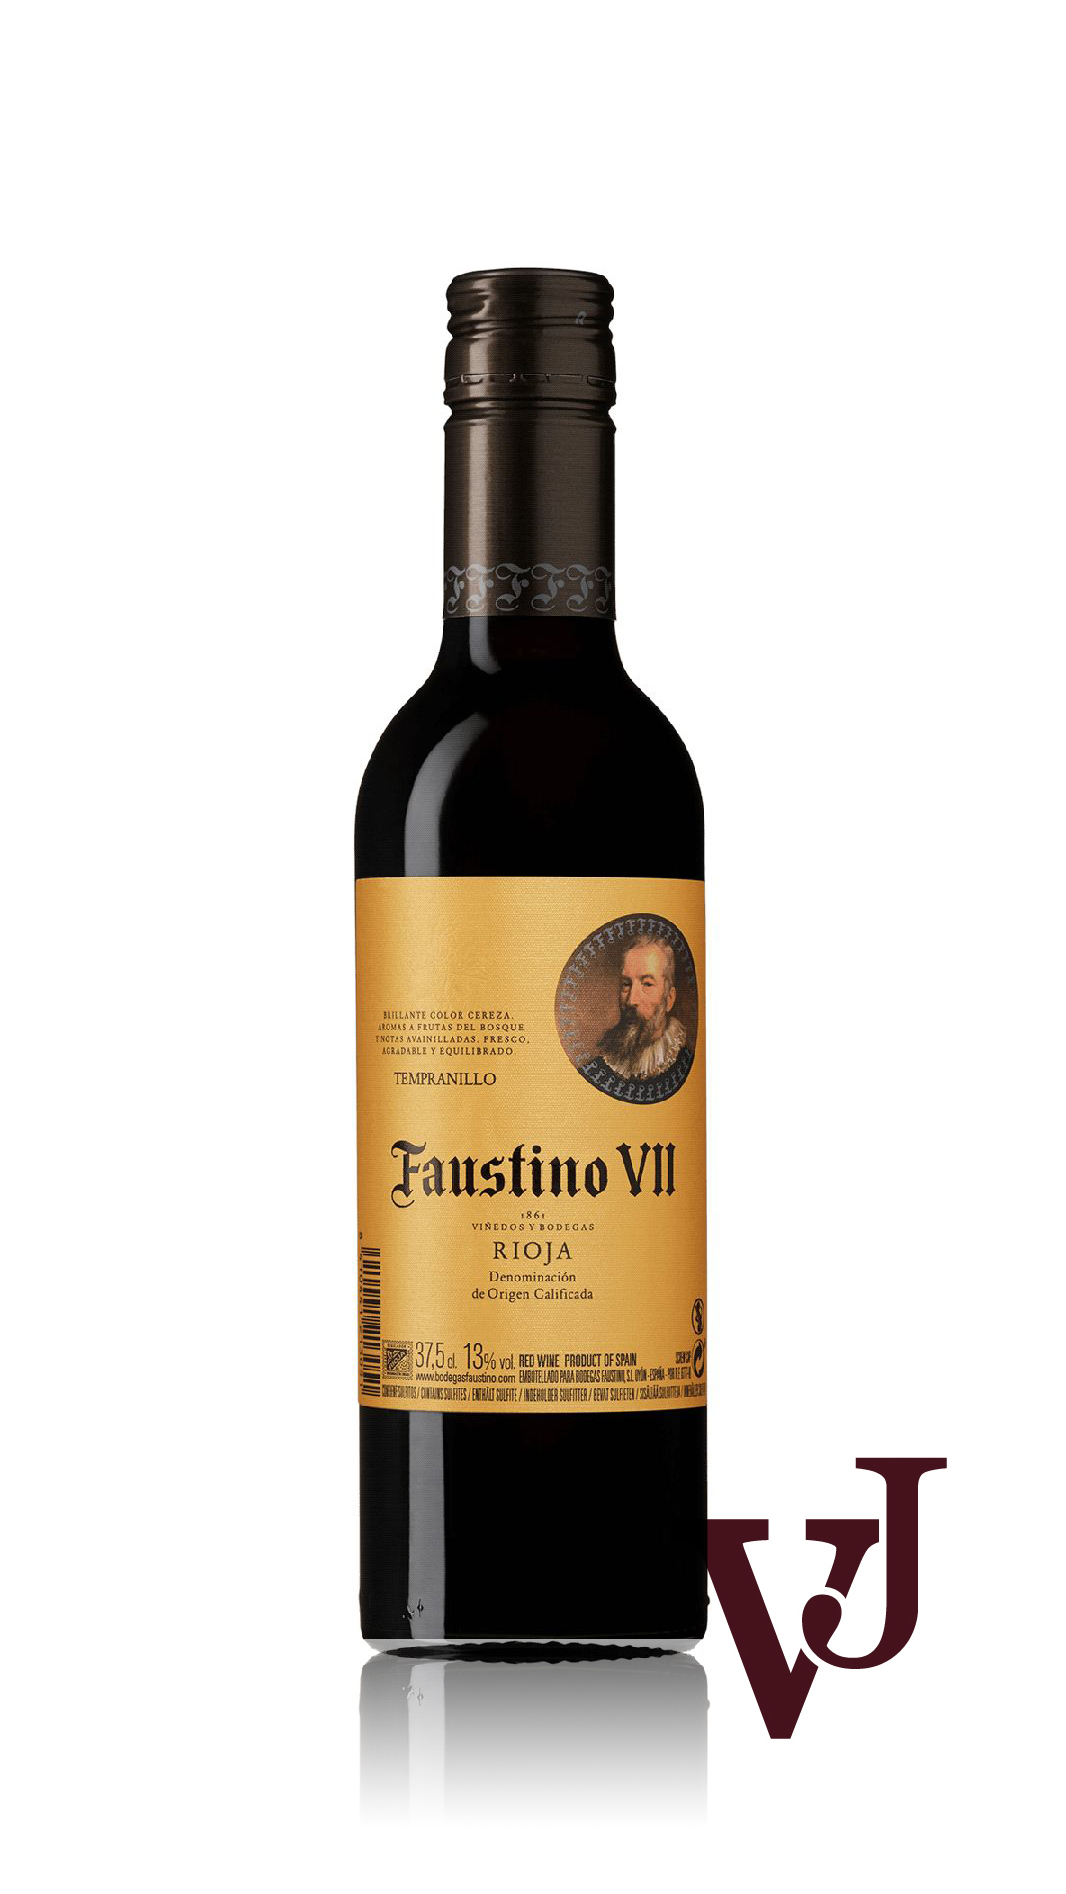 Rött Vin - Faustino VII artikel nummer 2266202 från producenten Faustino Martínez från området Spanien